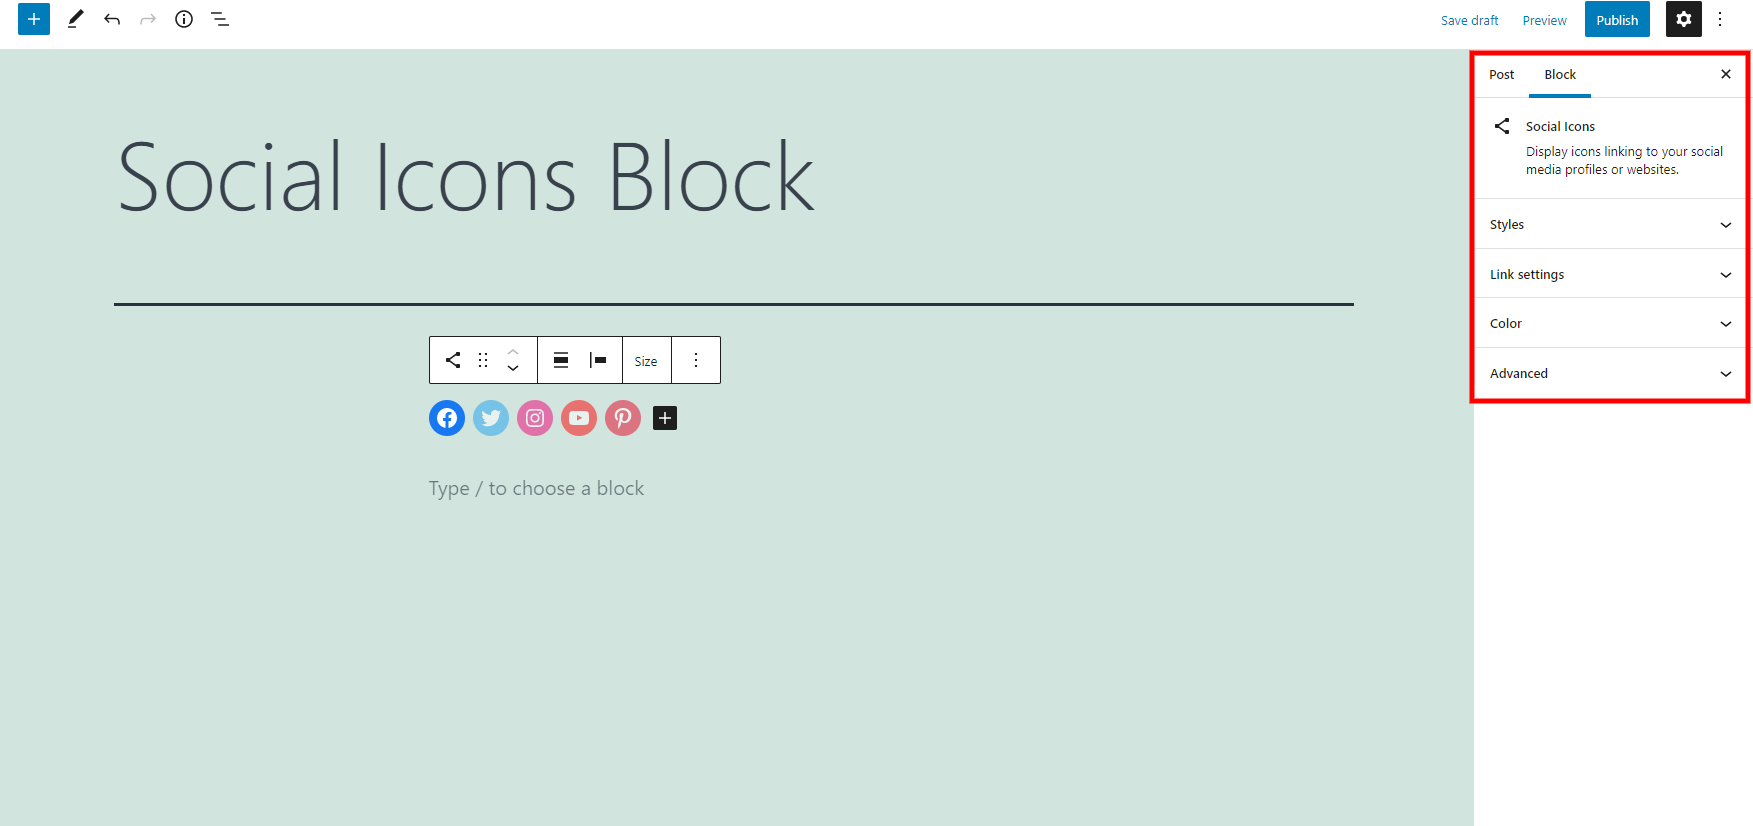 Social Icons Block Settings